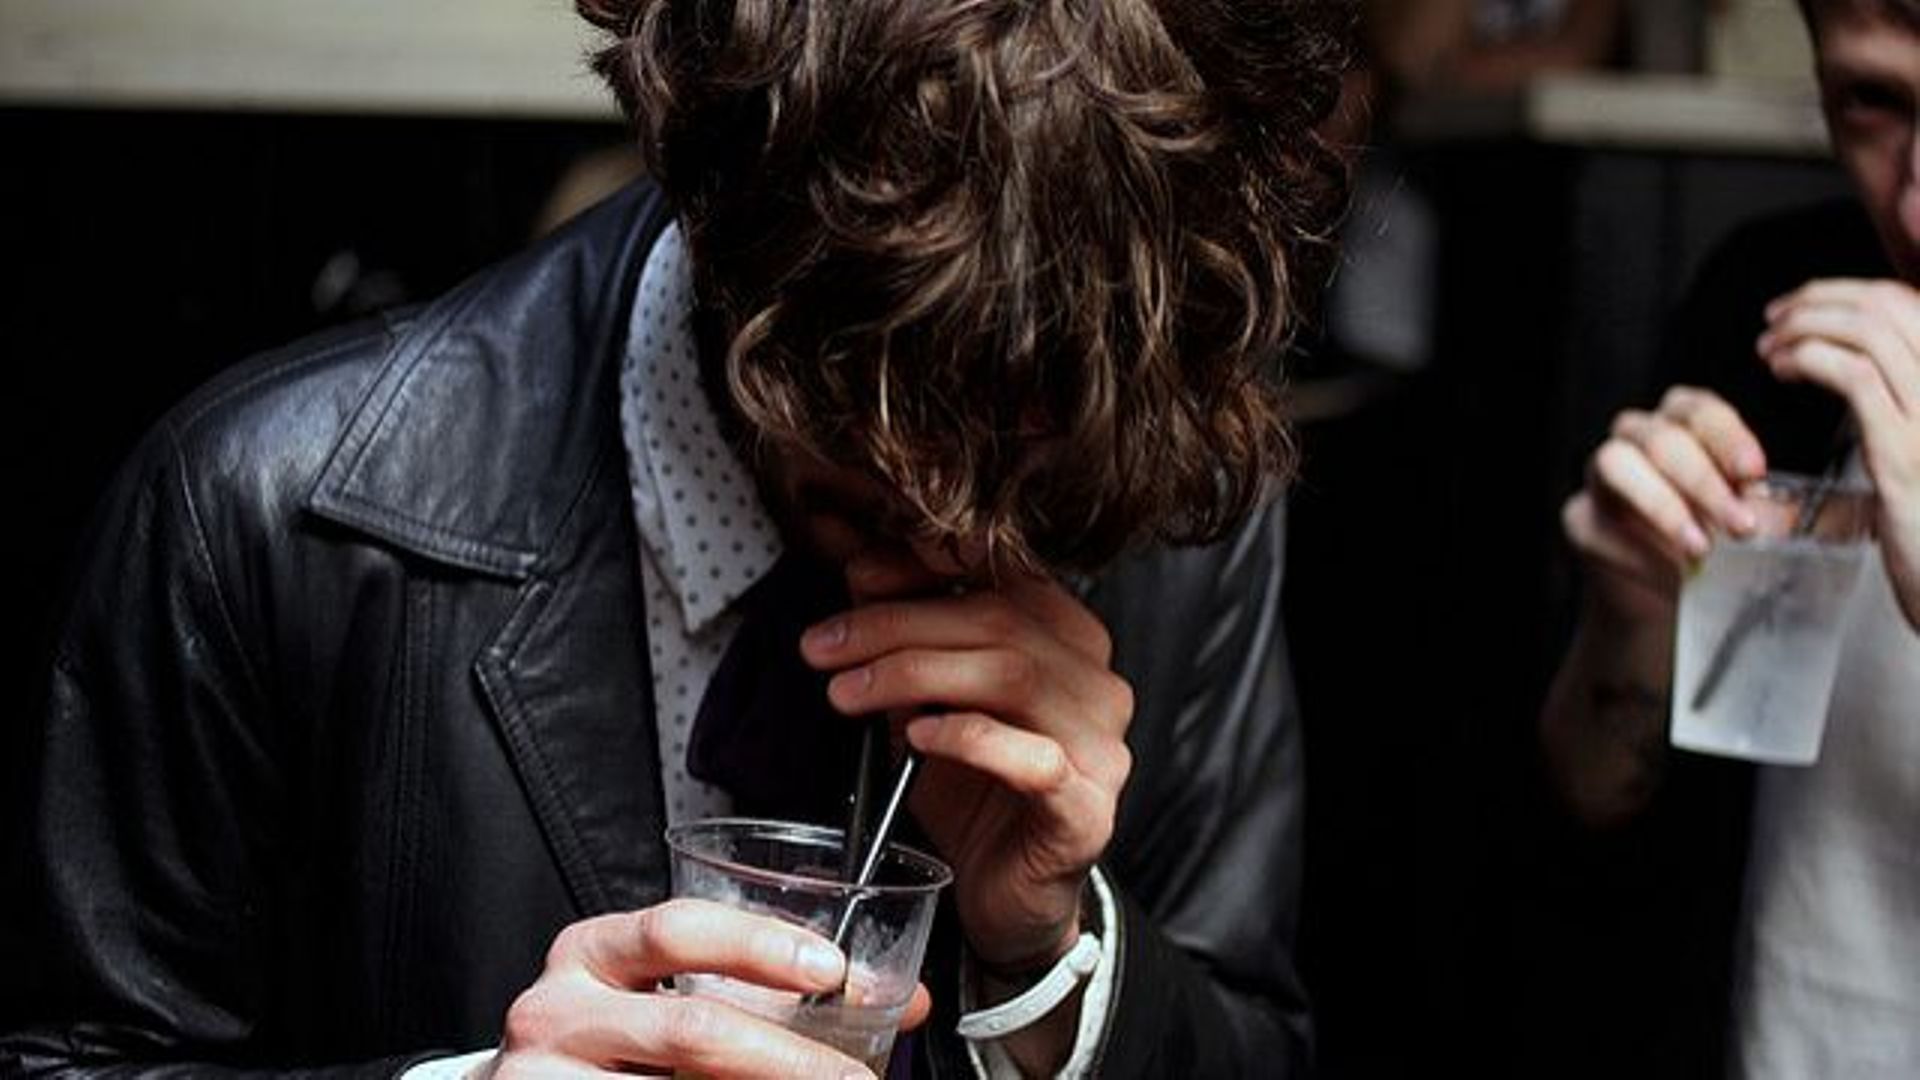 Ce nouveau médicament aide les personnes alcooliques à diminuer les quantités absorbées et la fréquence de consommation.